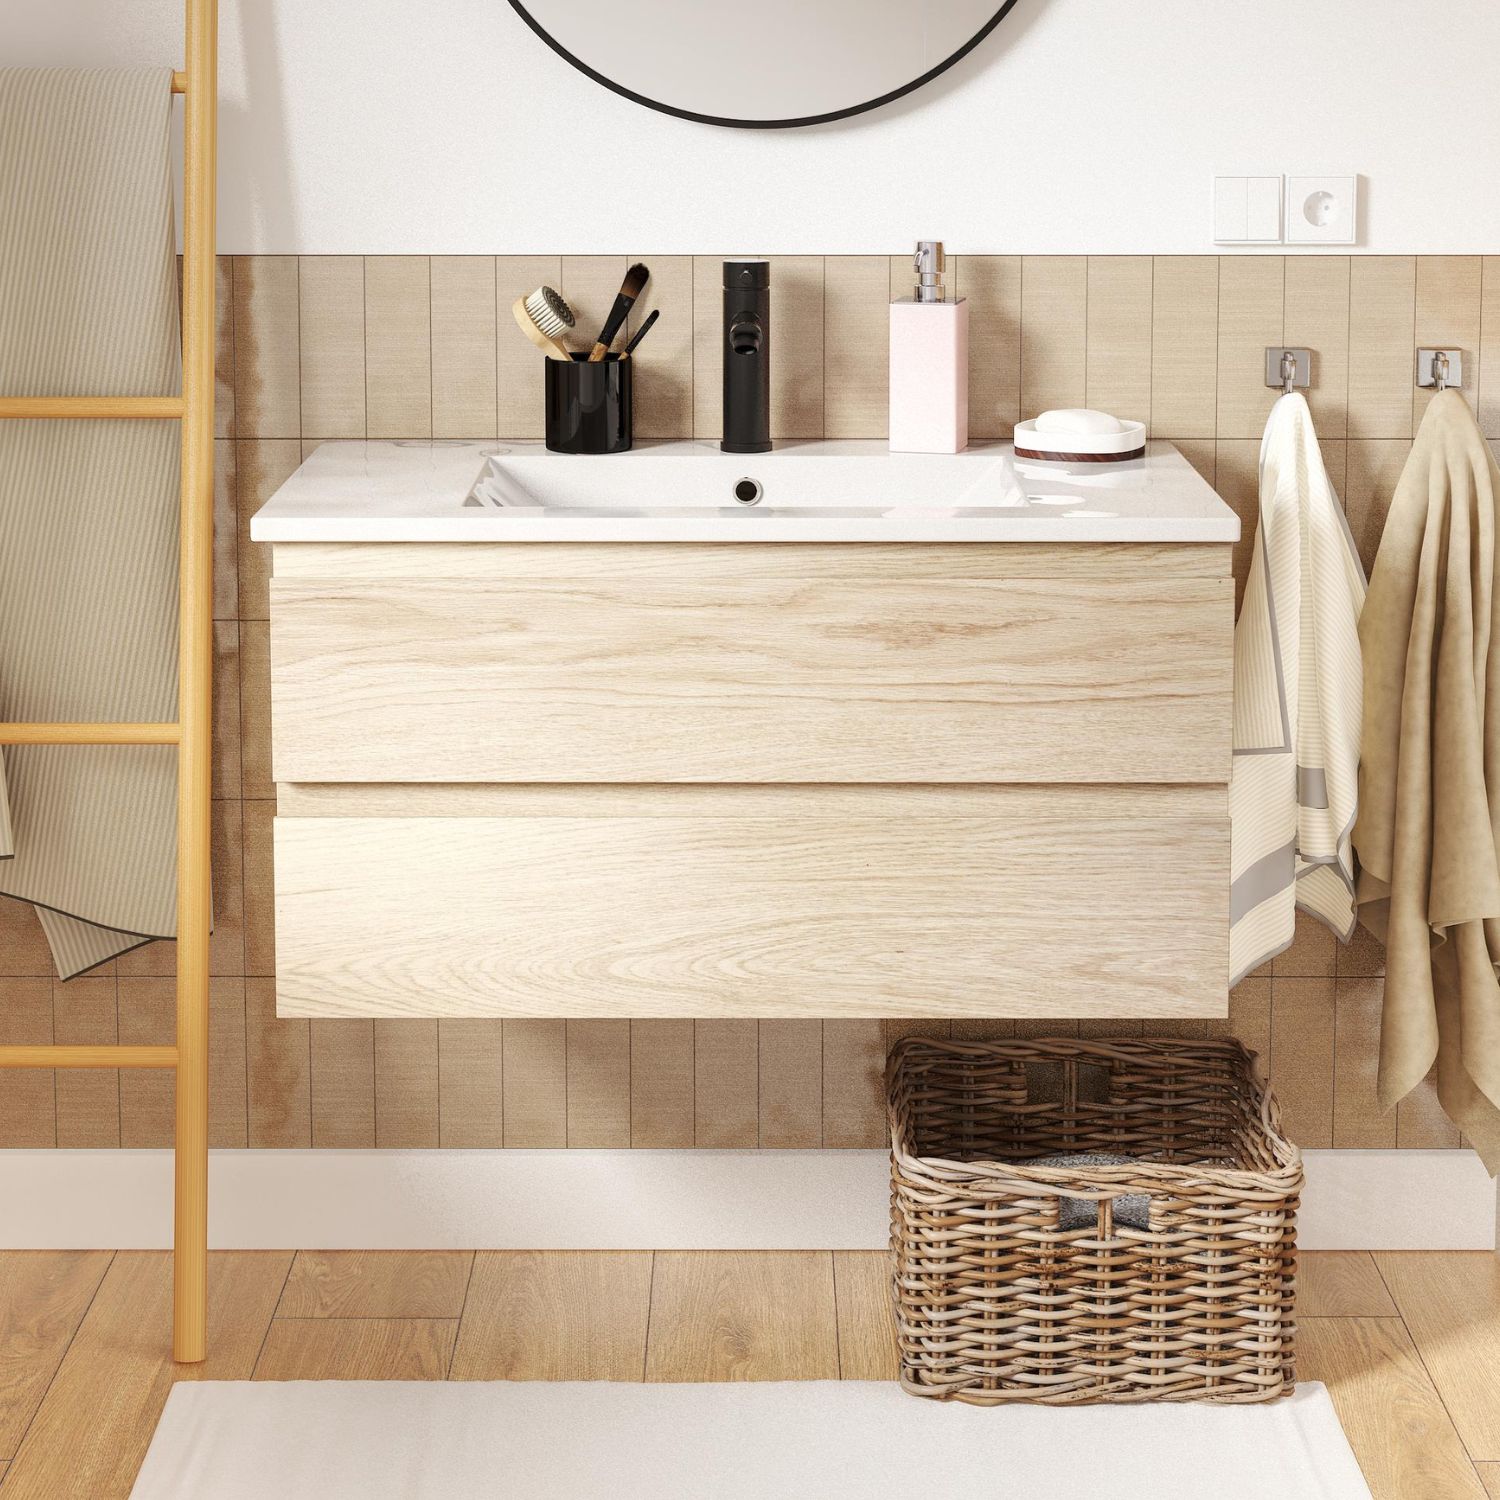 Optimiser l'espace de votre salle de bain : astuces et meubles fonctionnels